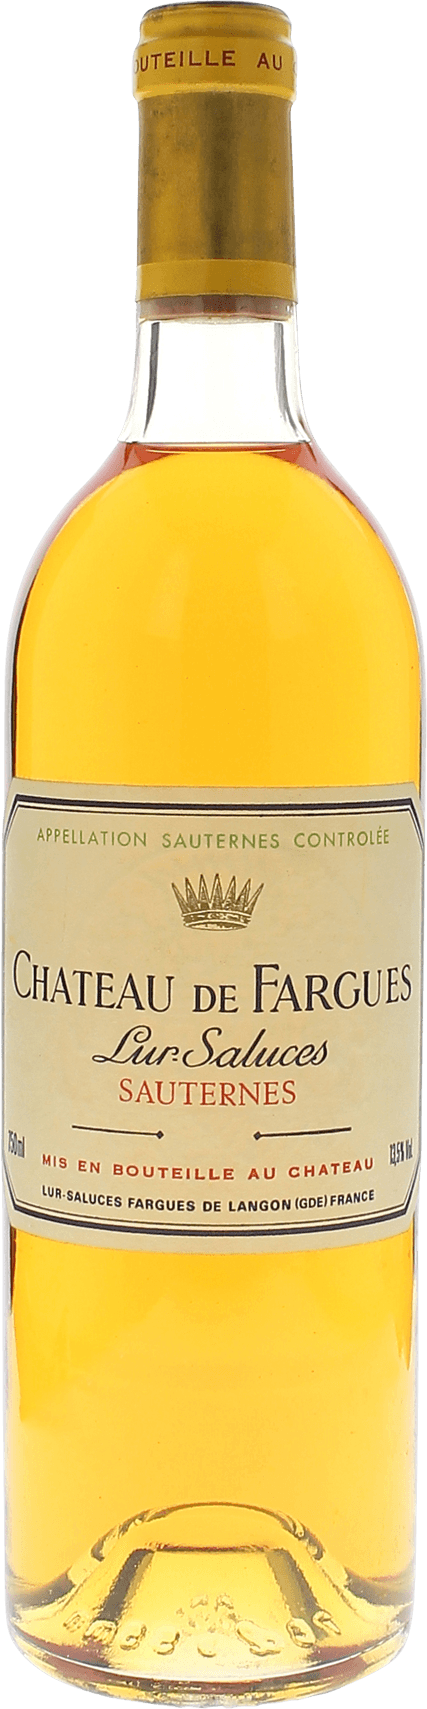 Fargues 1988 1er cru Sauternes, Bordeaux blanc